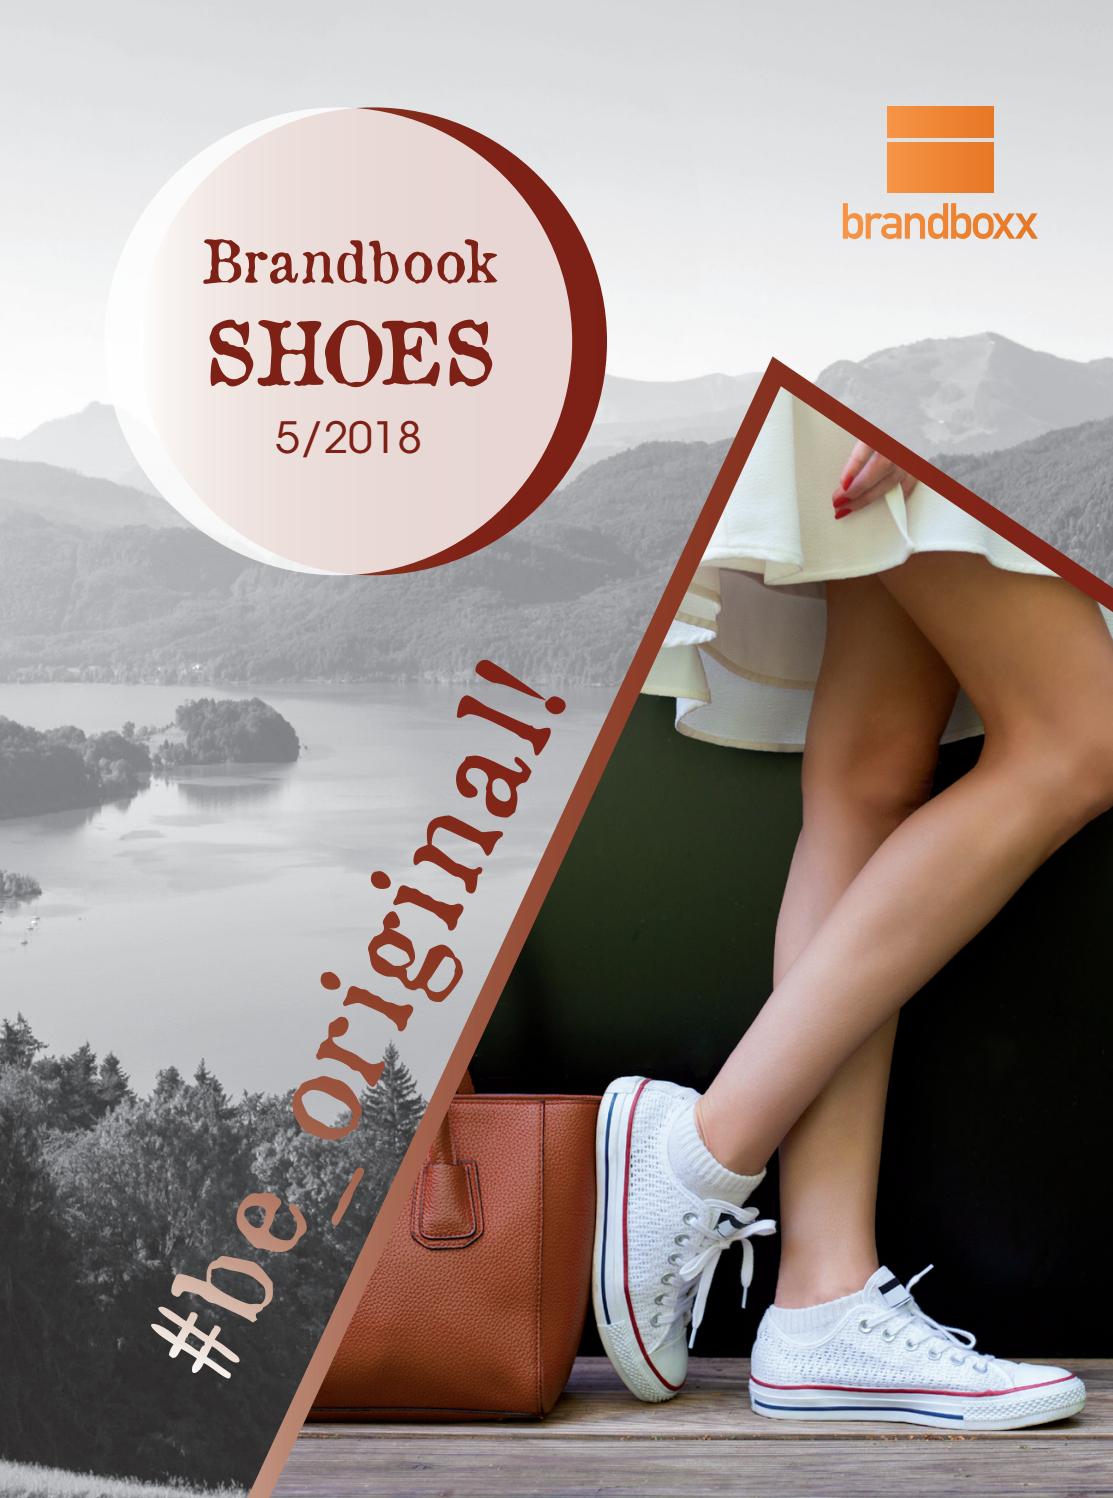 Garten SchÃ¶n Machen Neu Brandbook Shoes 5 2018 by Brandboxx issuu